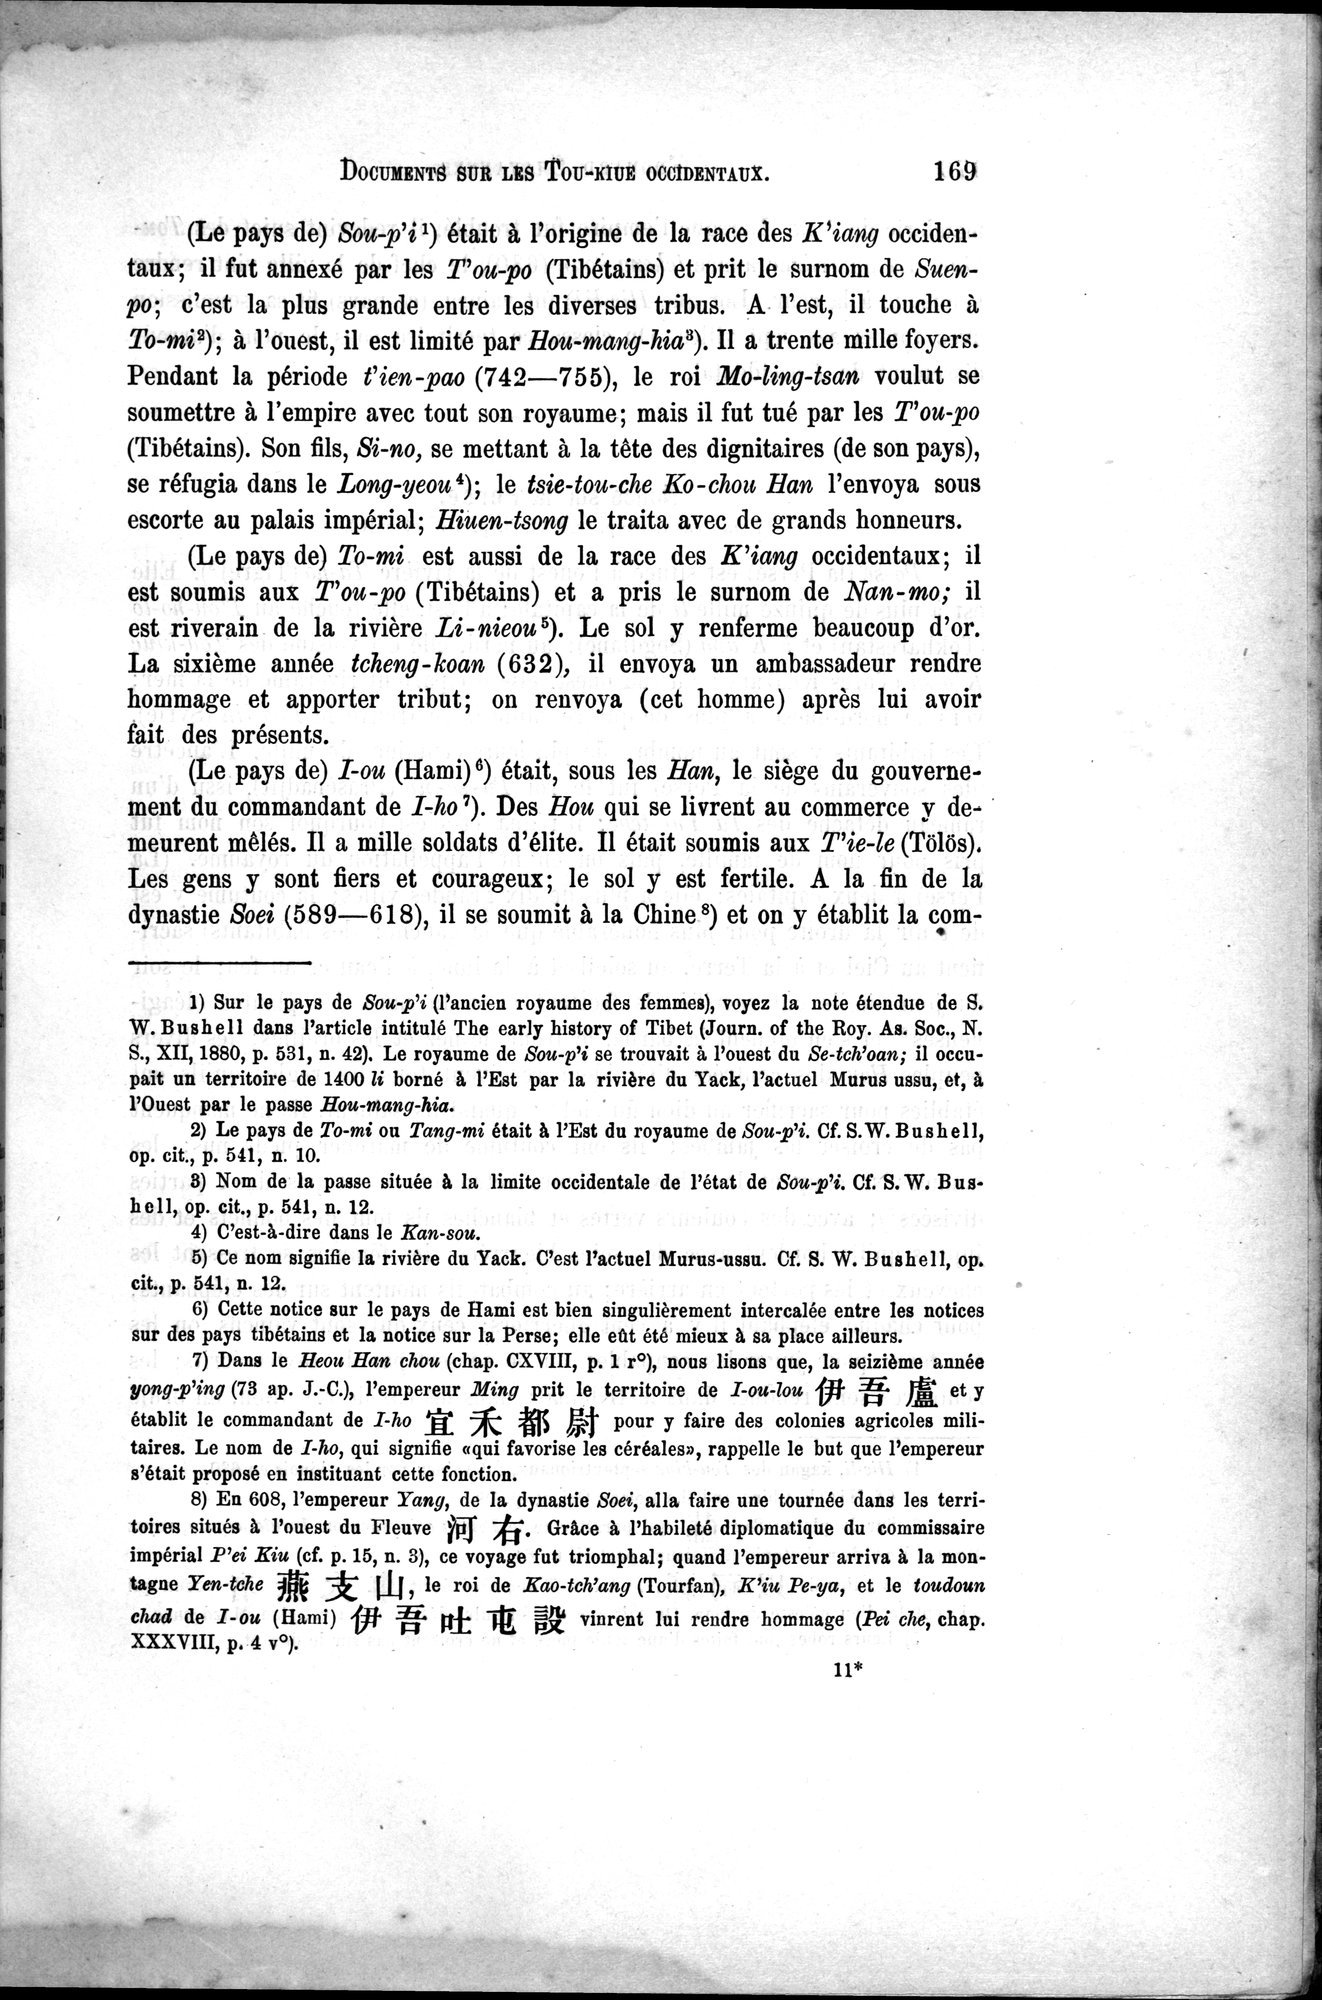 Documents sur les Tou-kiue (Turcs) occidentaux : vol.1 / Page 179 (Grayscale High Resolution Image)